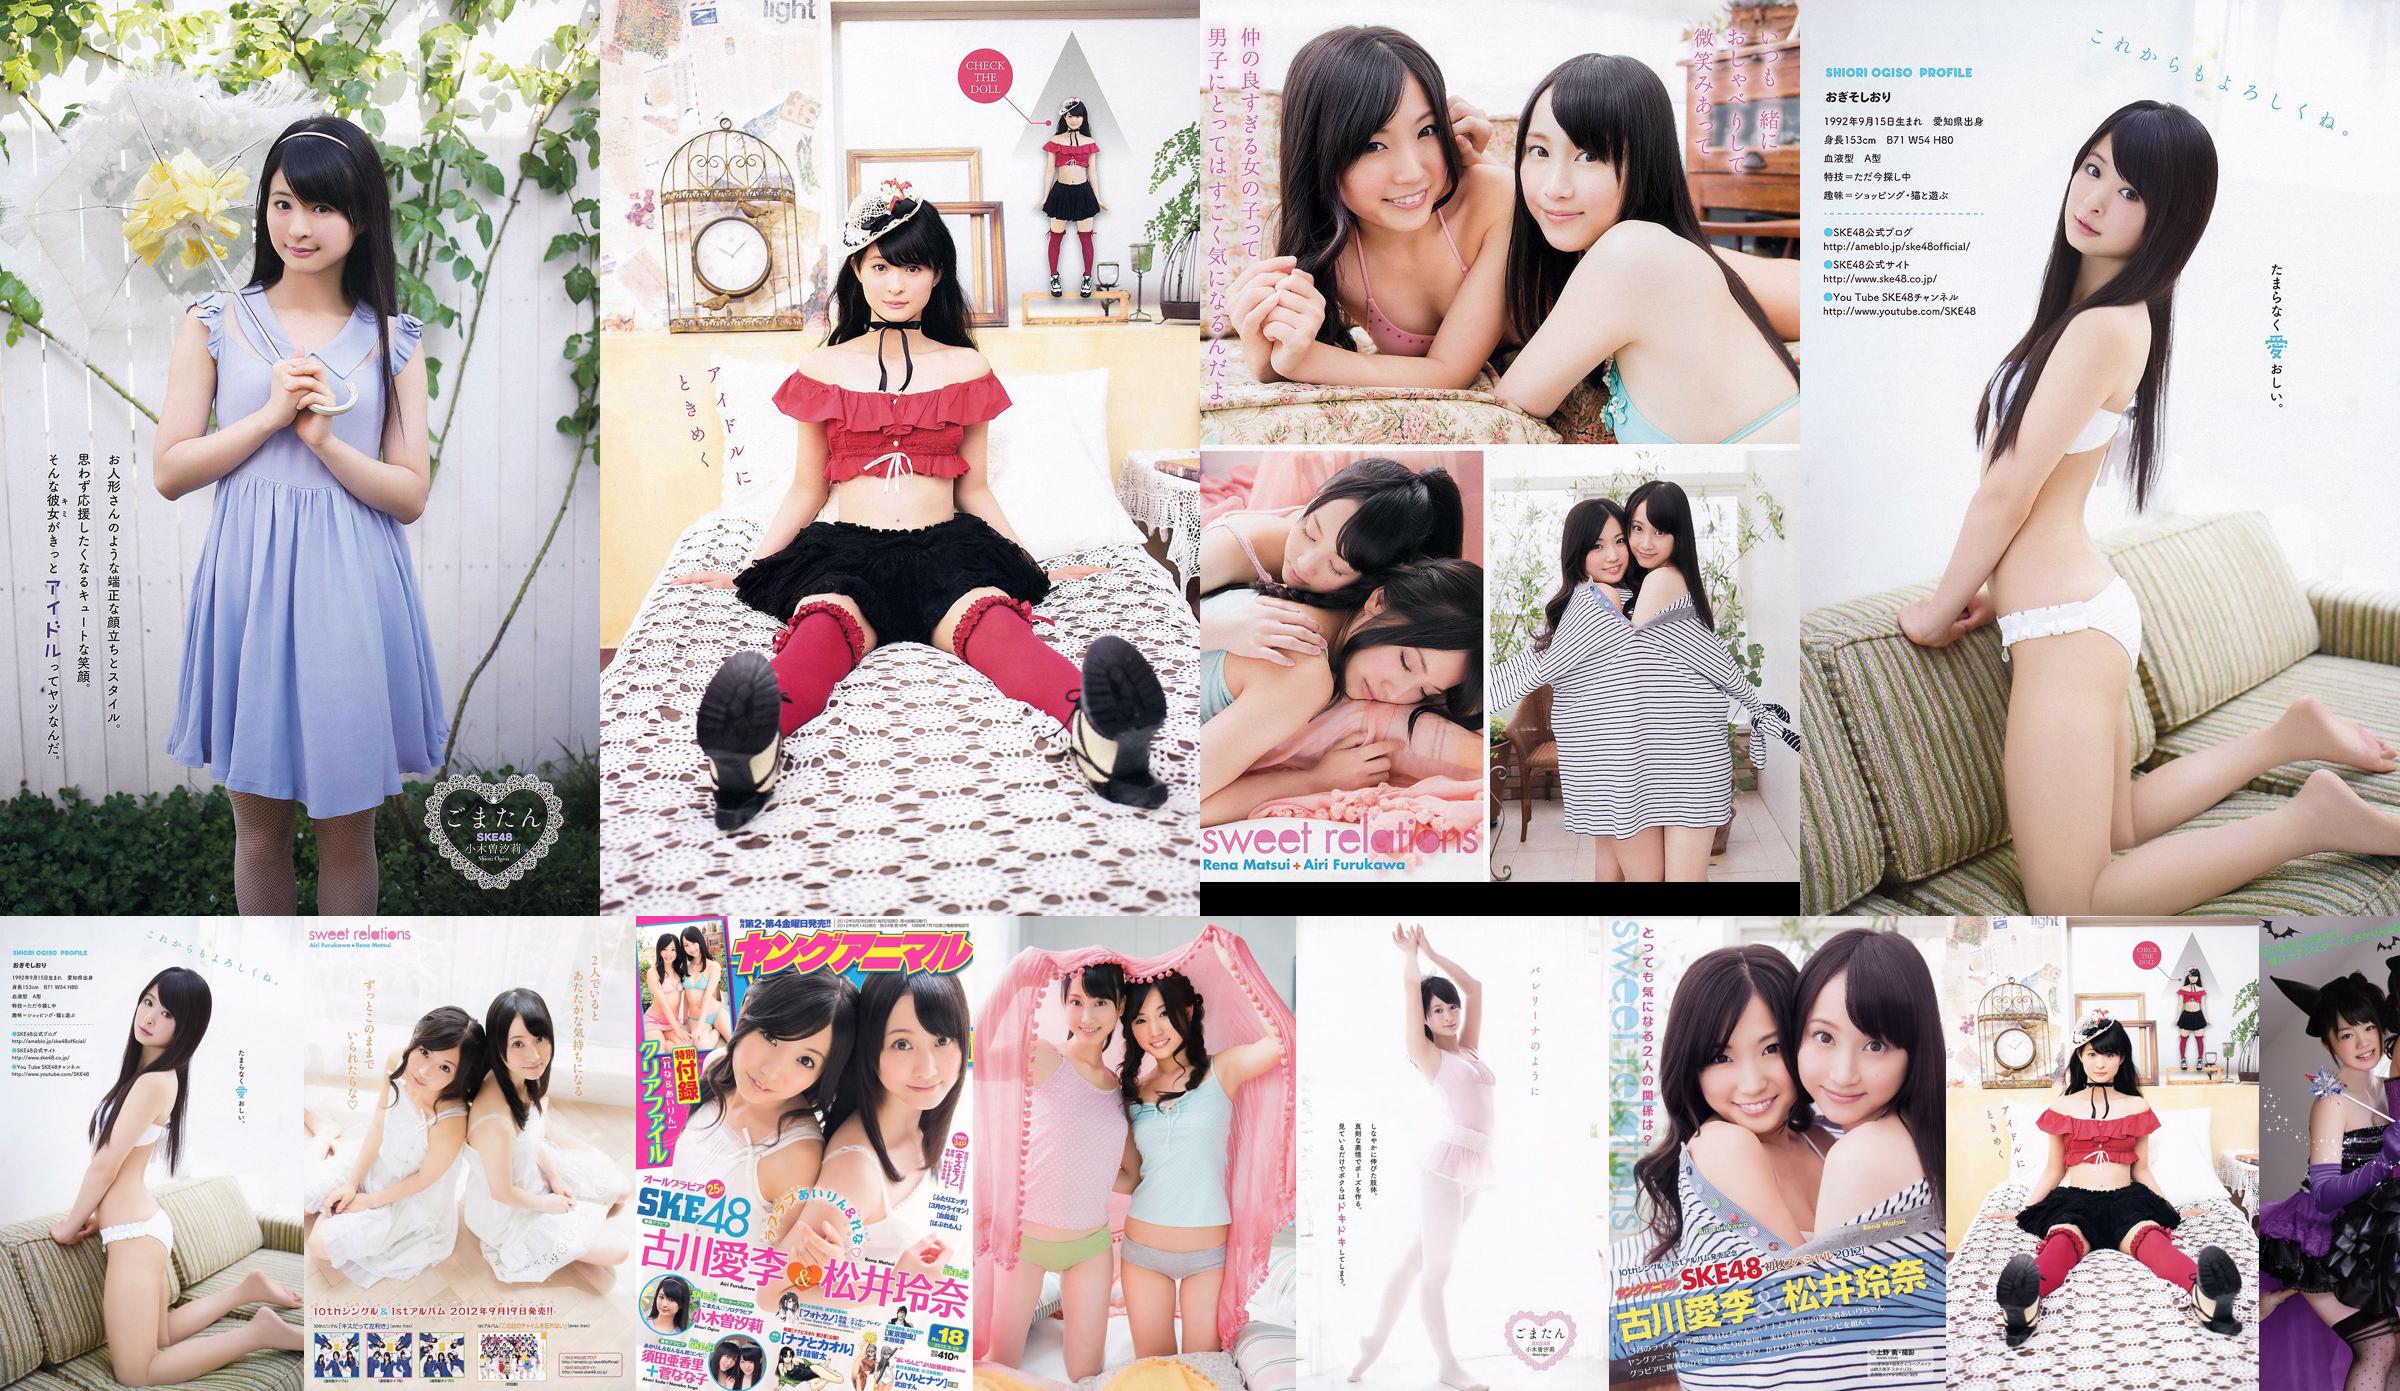 Ai Li Furukawa, Rena Matsui, Sasa Ogi, Aikari Suda [Young Animal] 2012 No.18 Photo Magazine No.3e4da7 Pagina 1